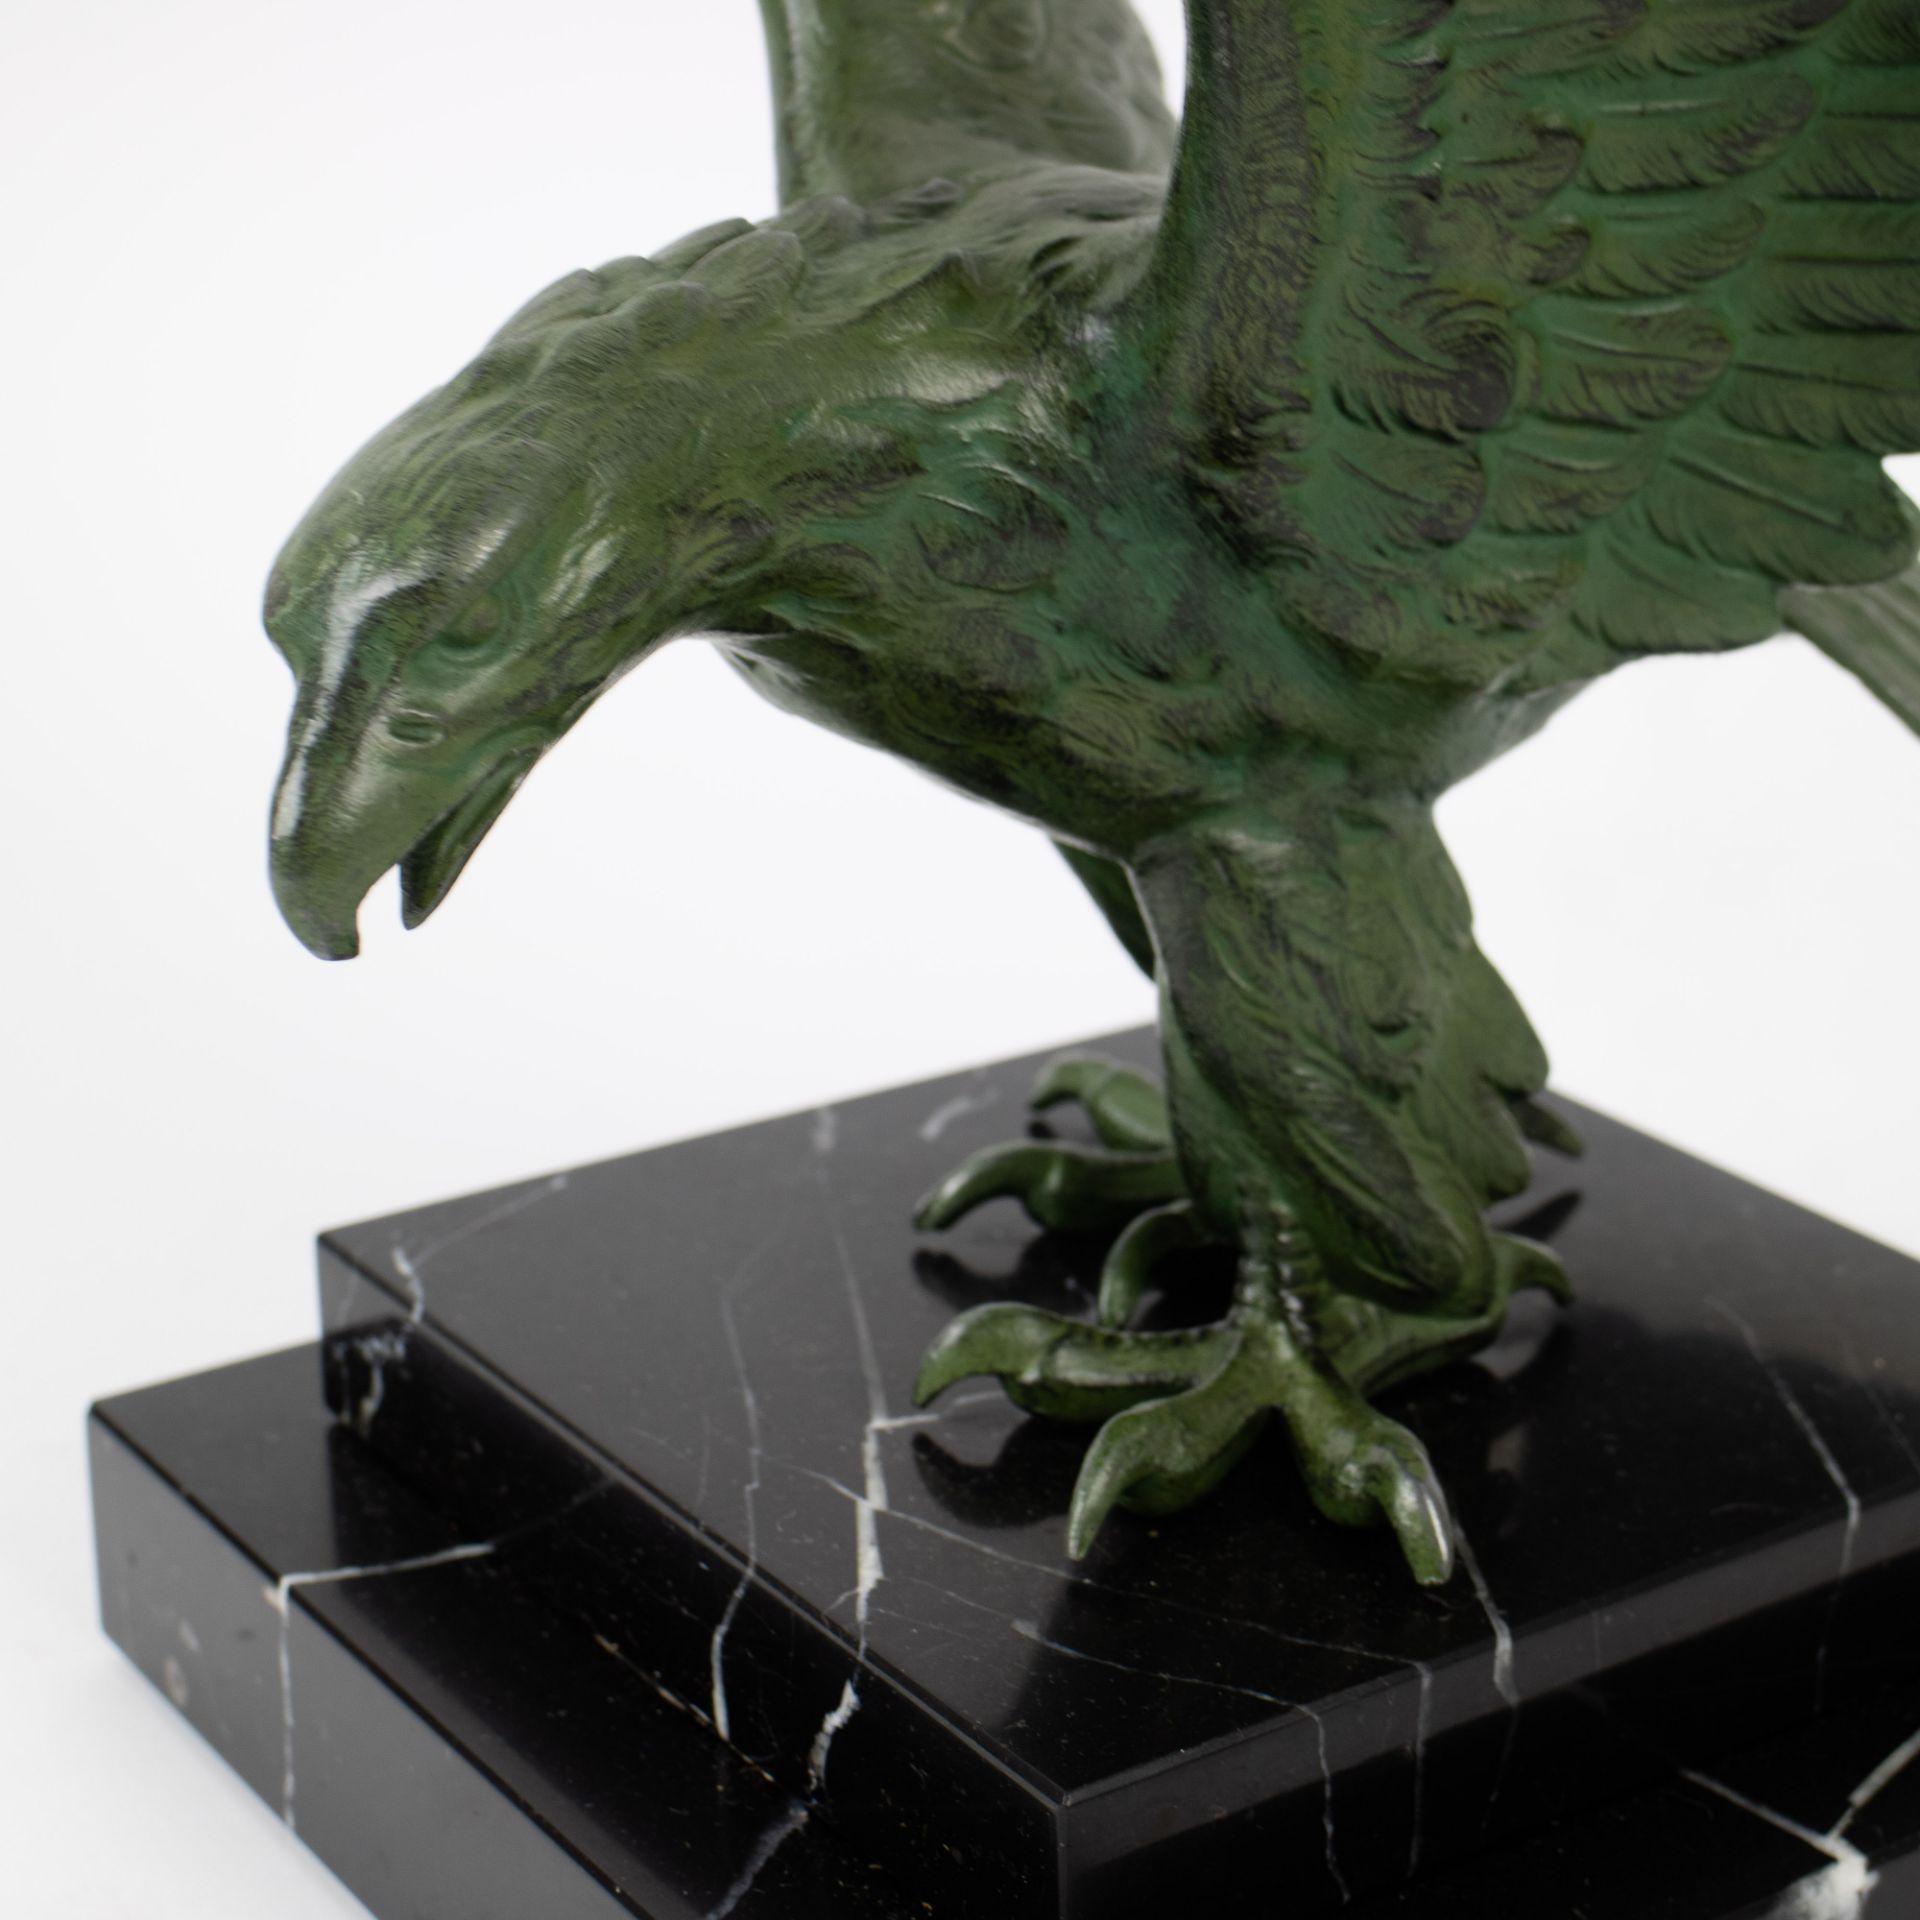 A bronze sculpture of an eagle - Bild 5 aus 5